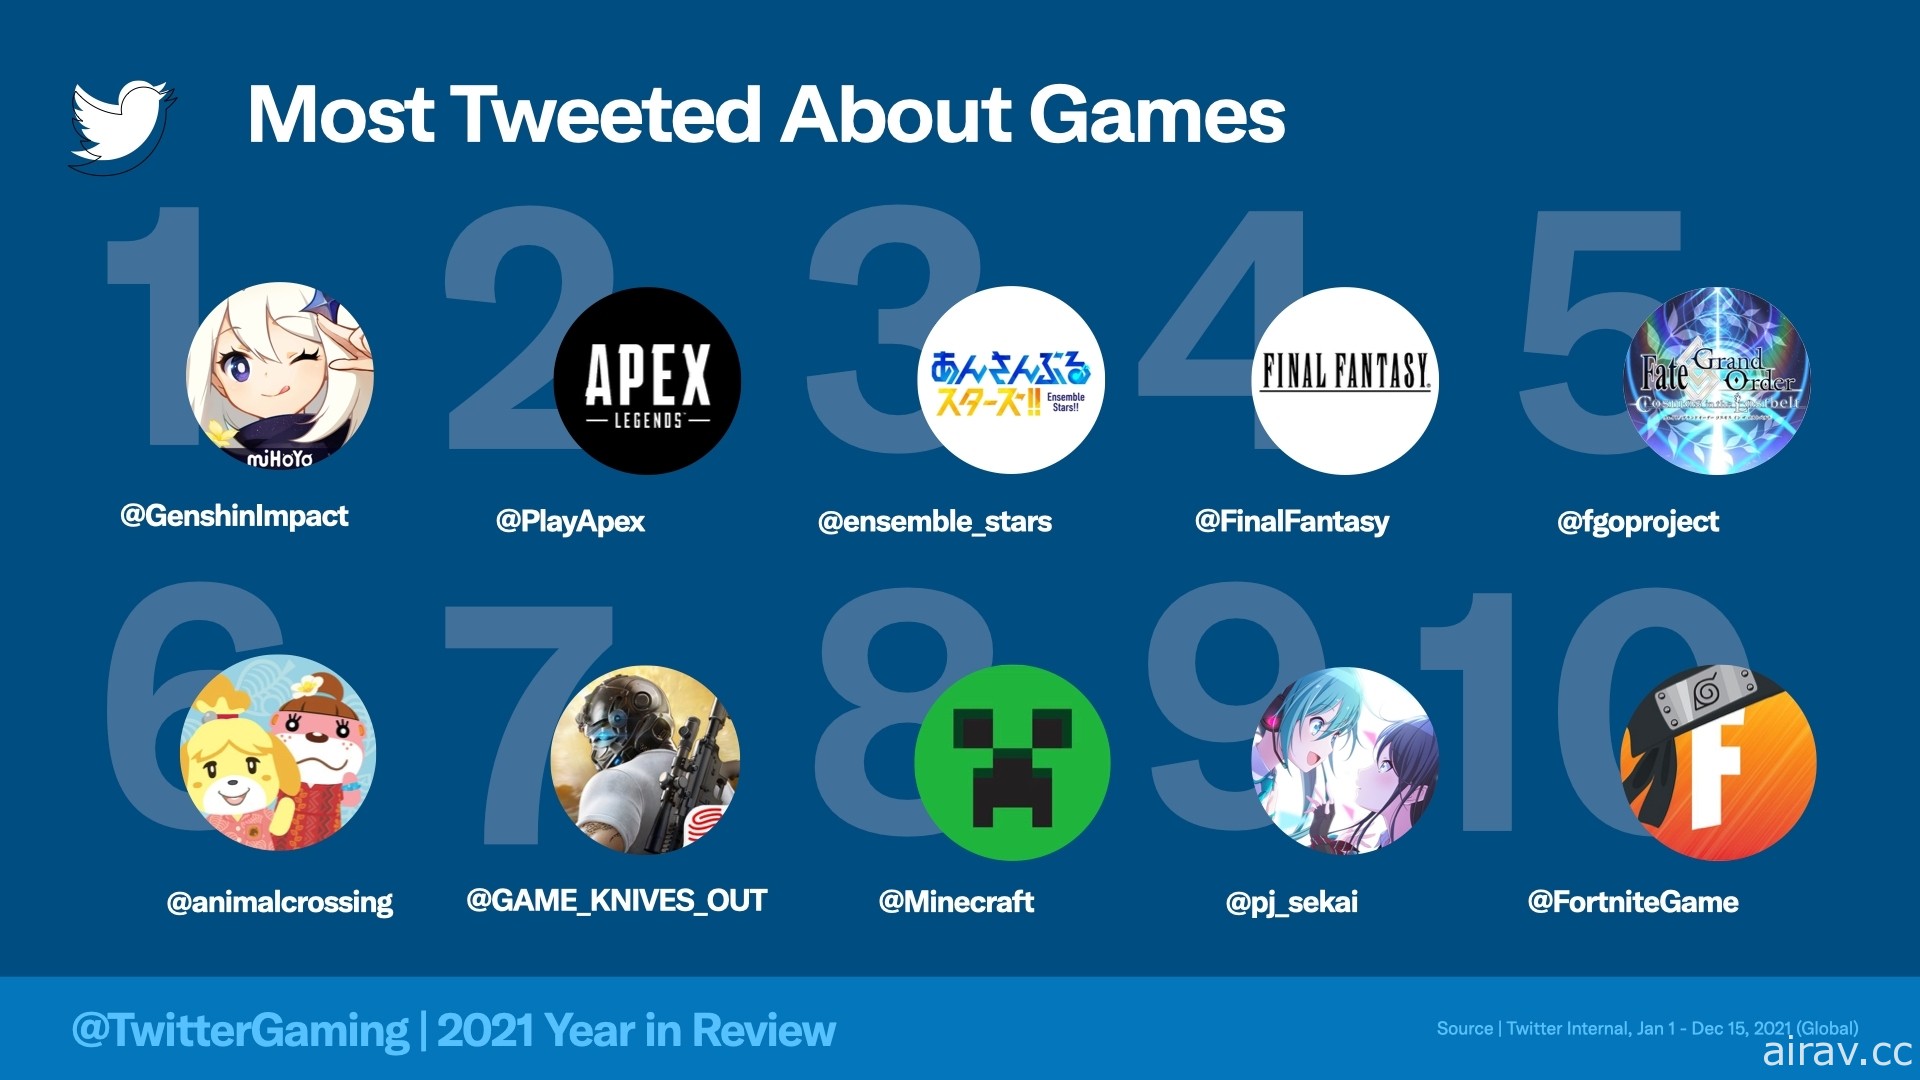 Twitter 公开 2021 年全球游戏趋势话题 《原神》为最多推文之游戏